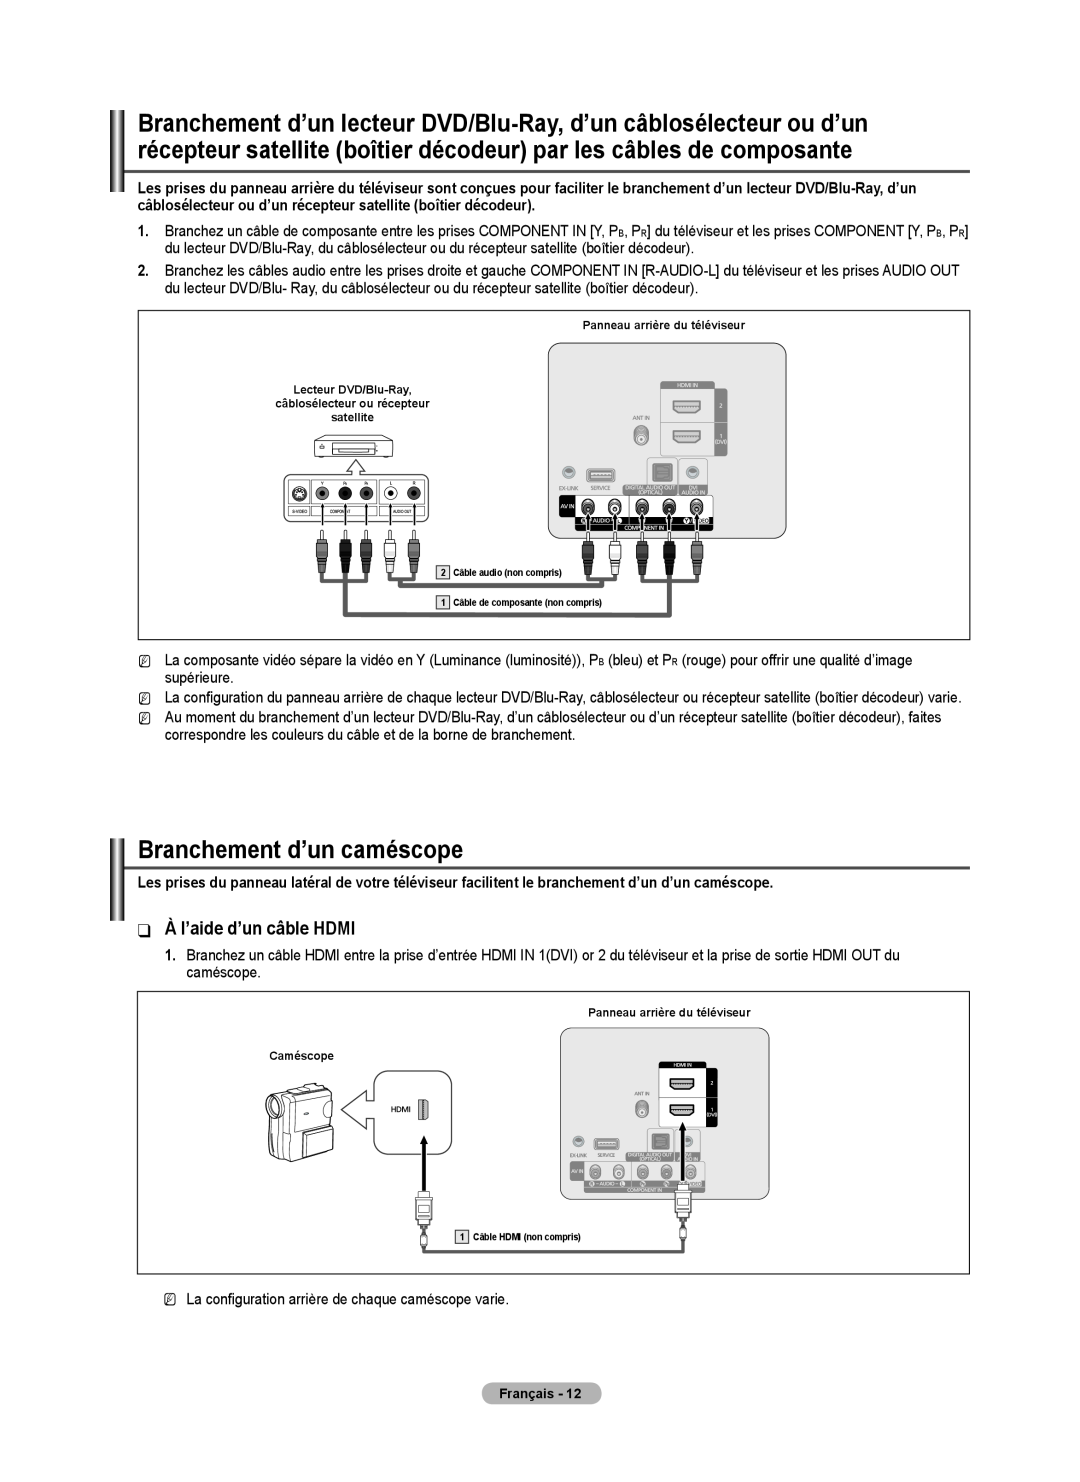 Samsung BN68-02426A-00 user manual Branchement d’un caméscope, À l’aide d’un câble HDMI 